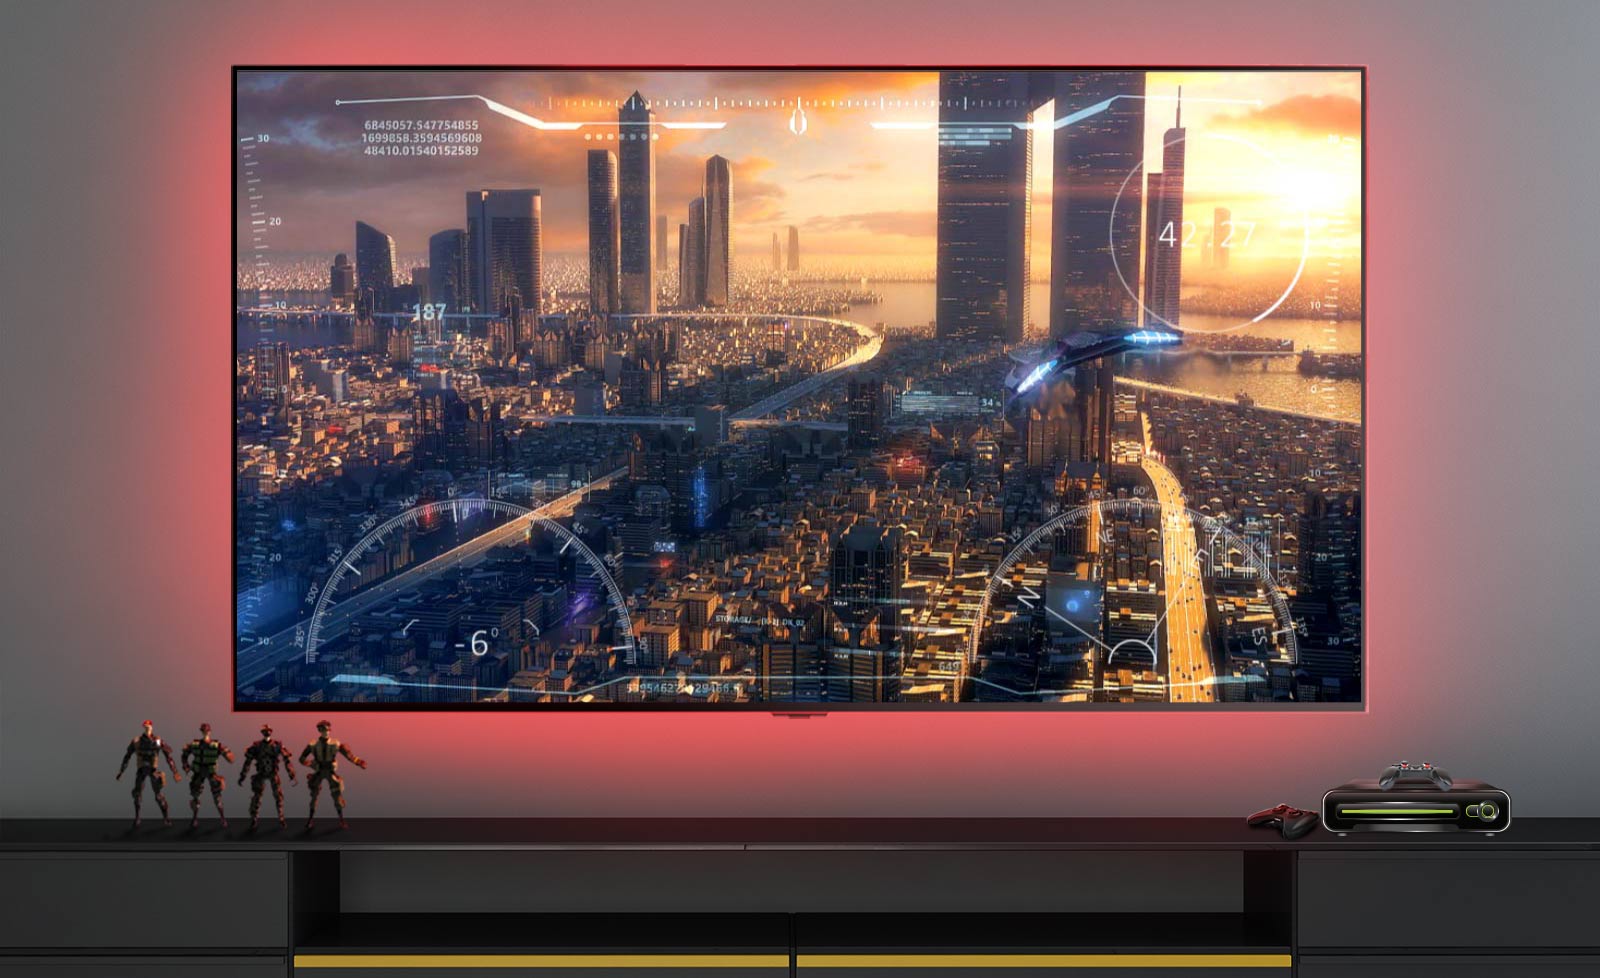 Prizor videoigre, ki prikazuje vesoljsko ladjo, ki leti nad mestom, prikazan na televizijskem zaslonu (predvajajte video).